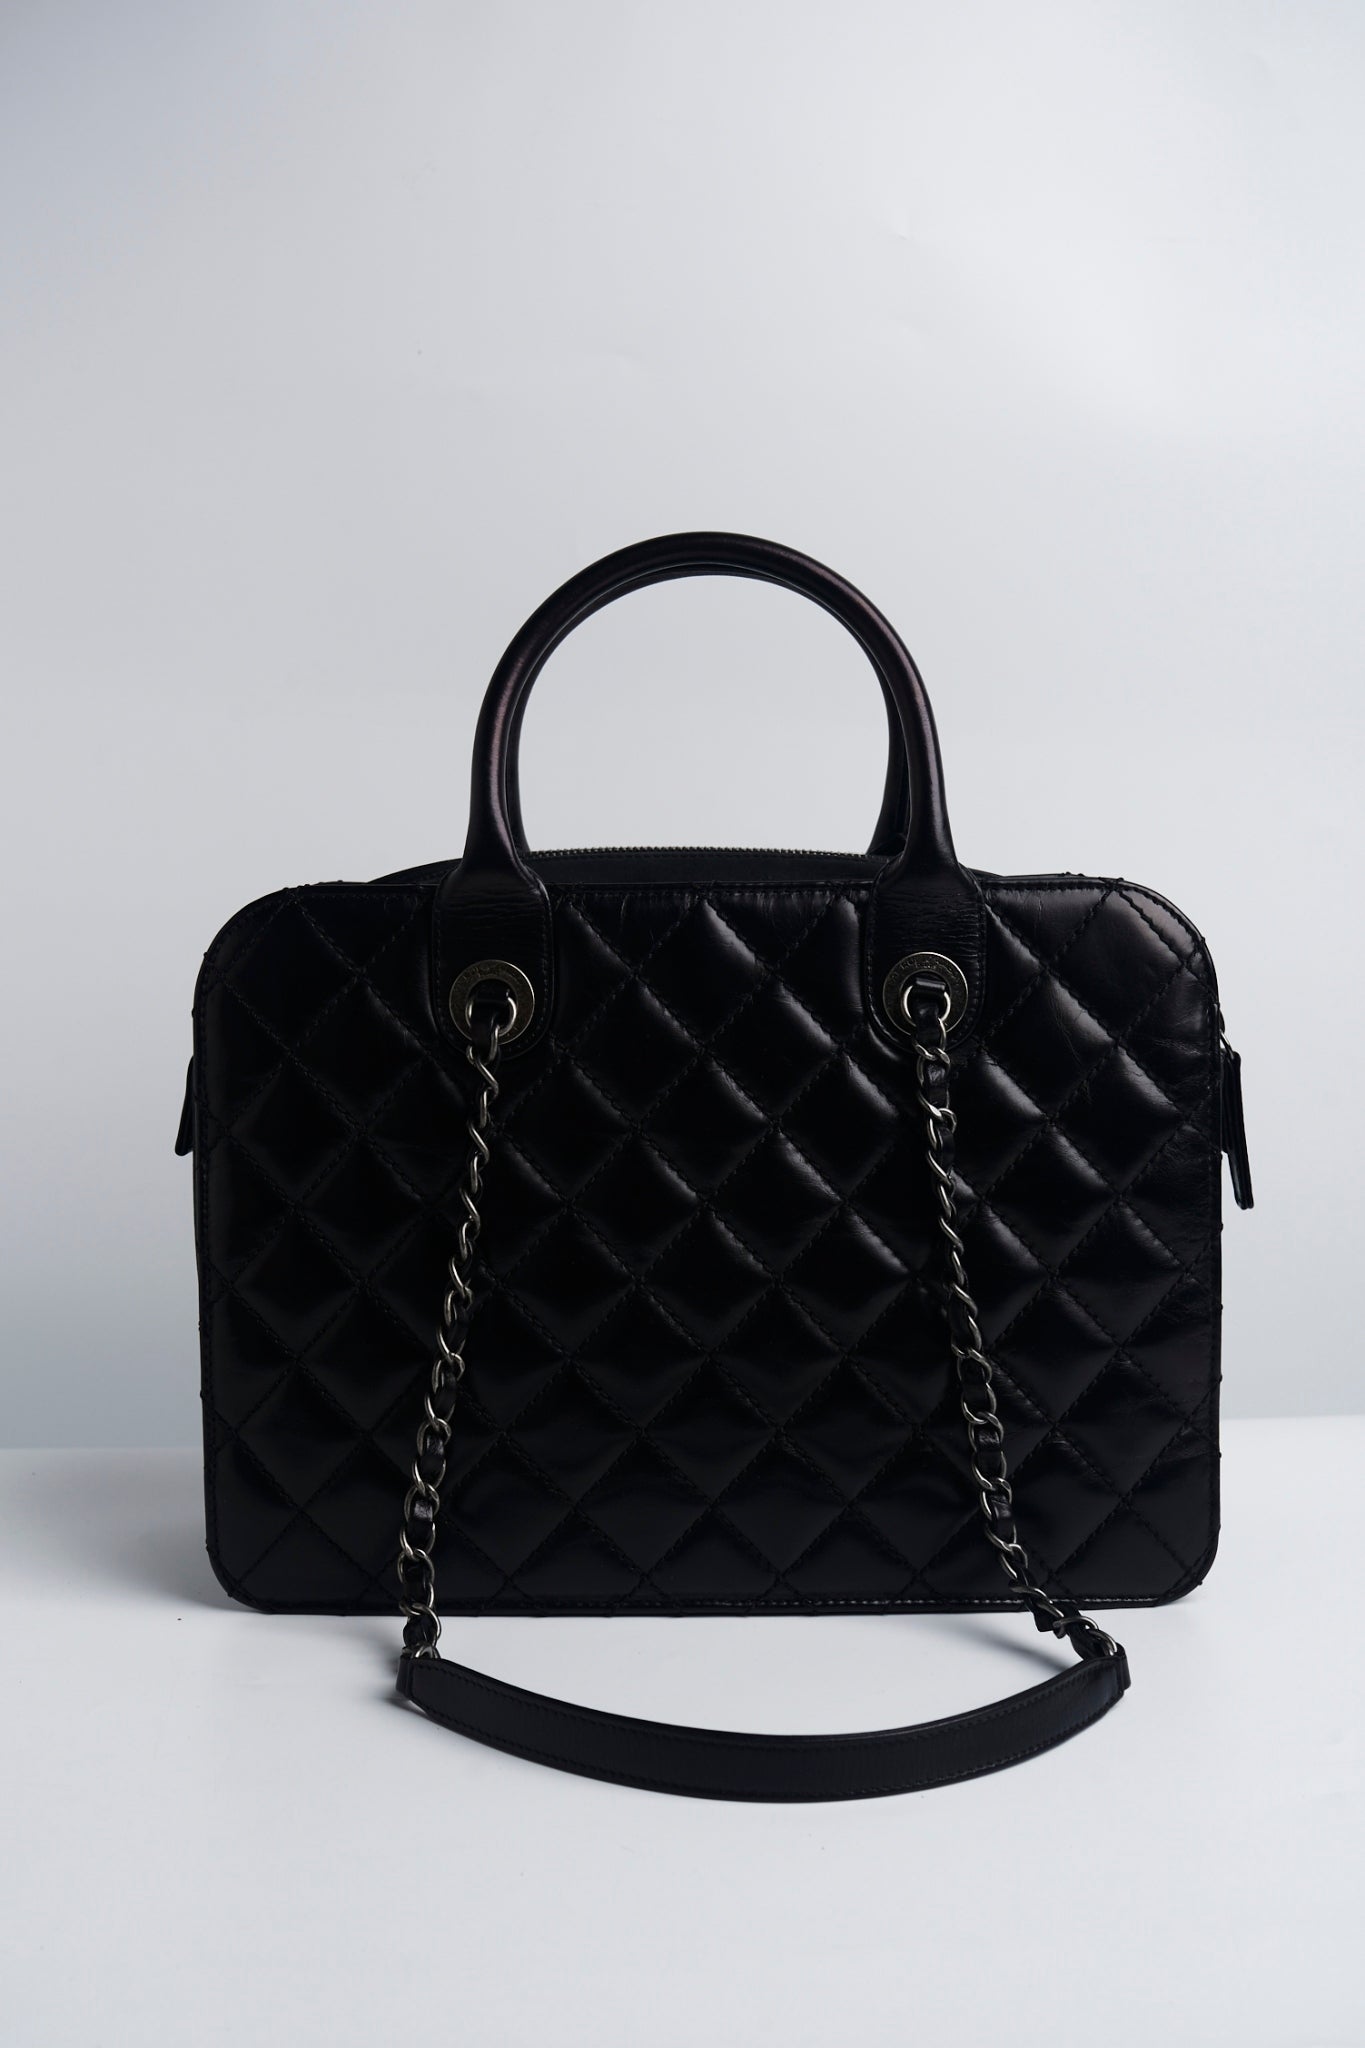 Chanel 31 rue cambon 2way bag